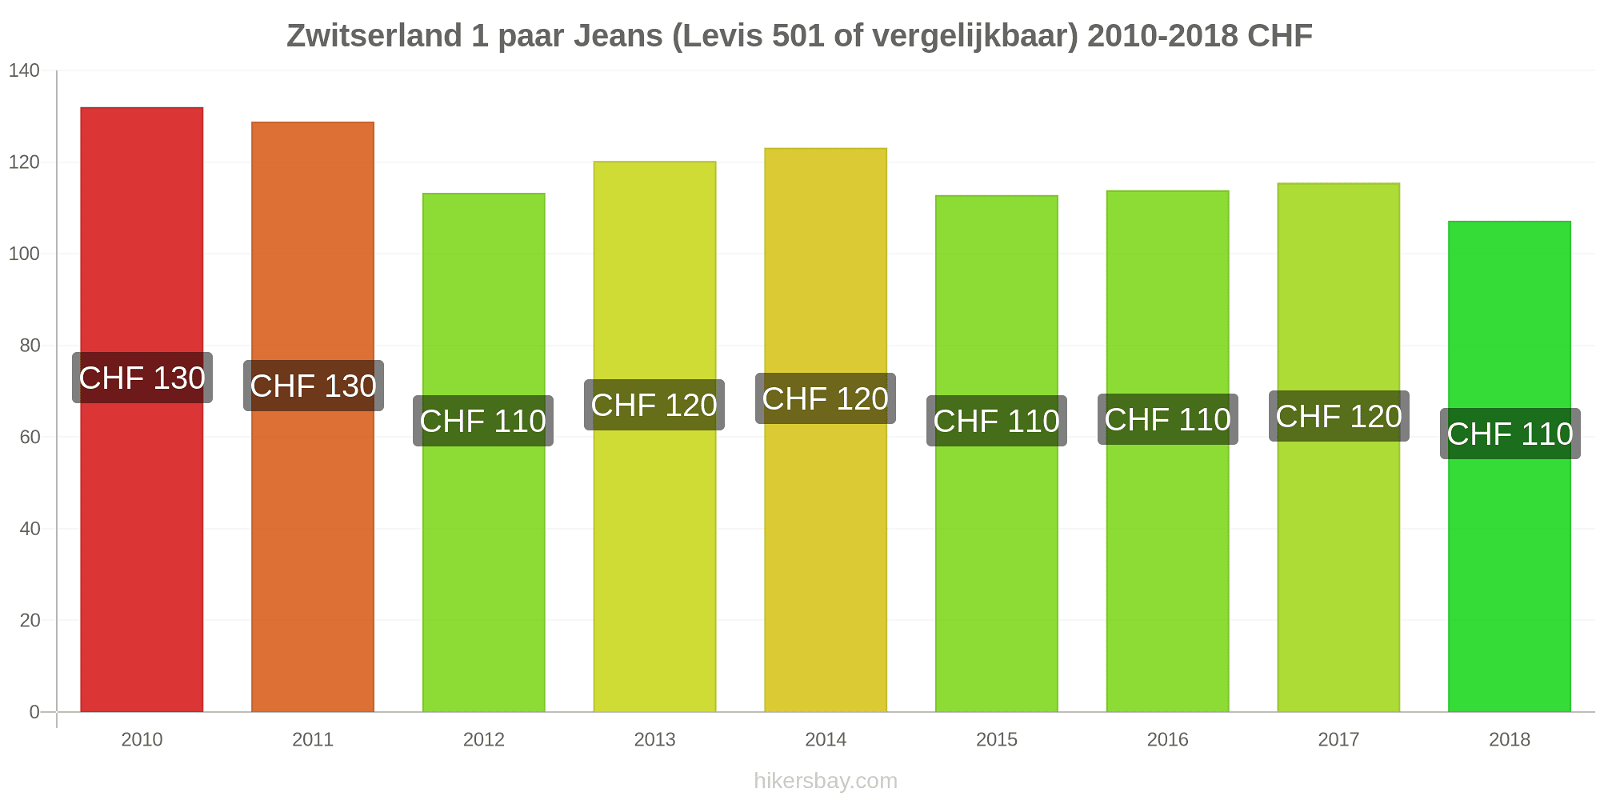 Zwitserland prijswijzigingen 1 paar jeans (Levis 501 of vergelijkbaar) hikersbay.com